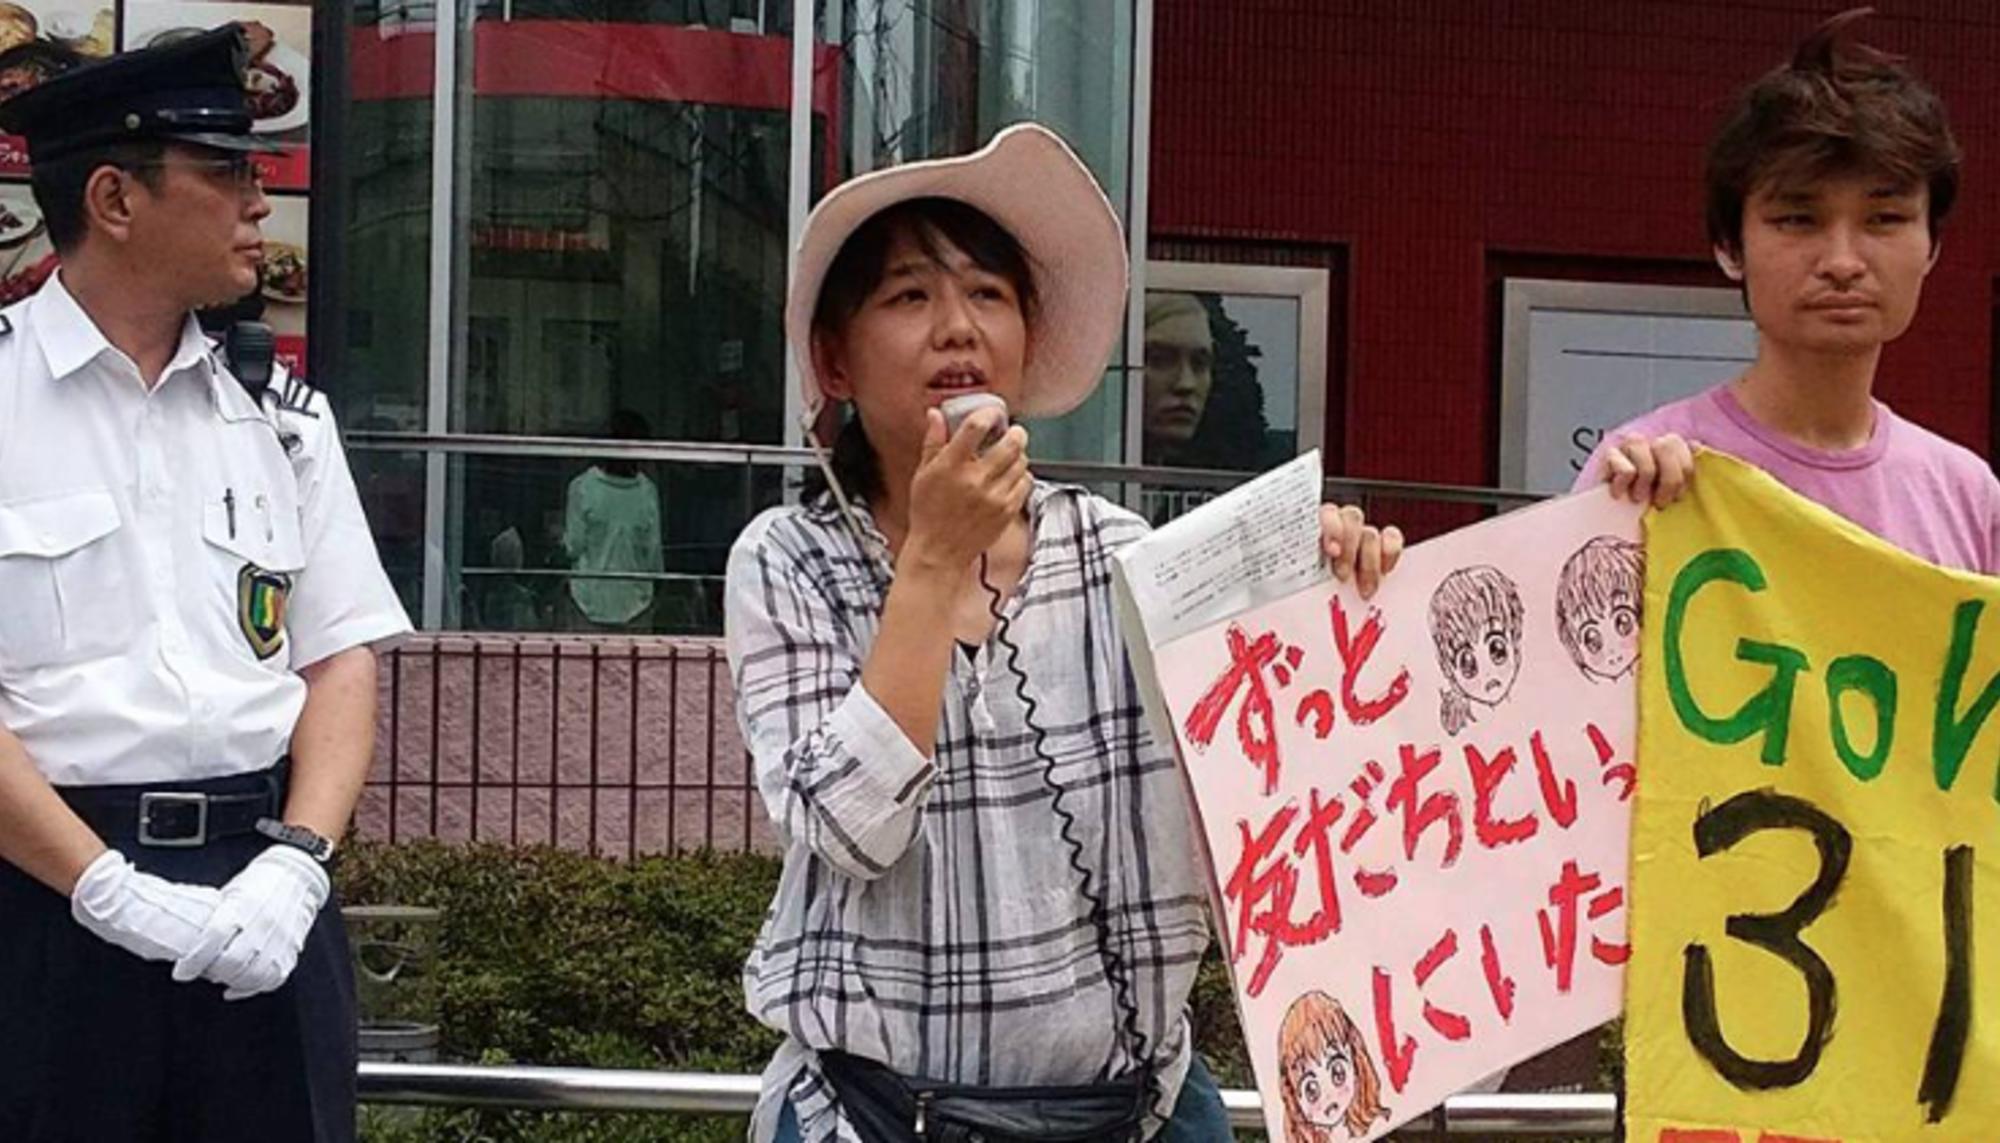 Las madres japonesas afectadas por la catástrofe nuclear de Fukushima conocen de primera mano sus efectos, algo que los trolls pro-nucleares no conocen. Fuente: Beyond Nuclear International